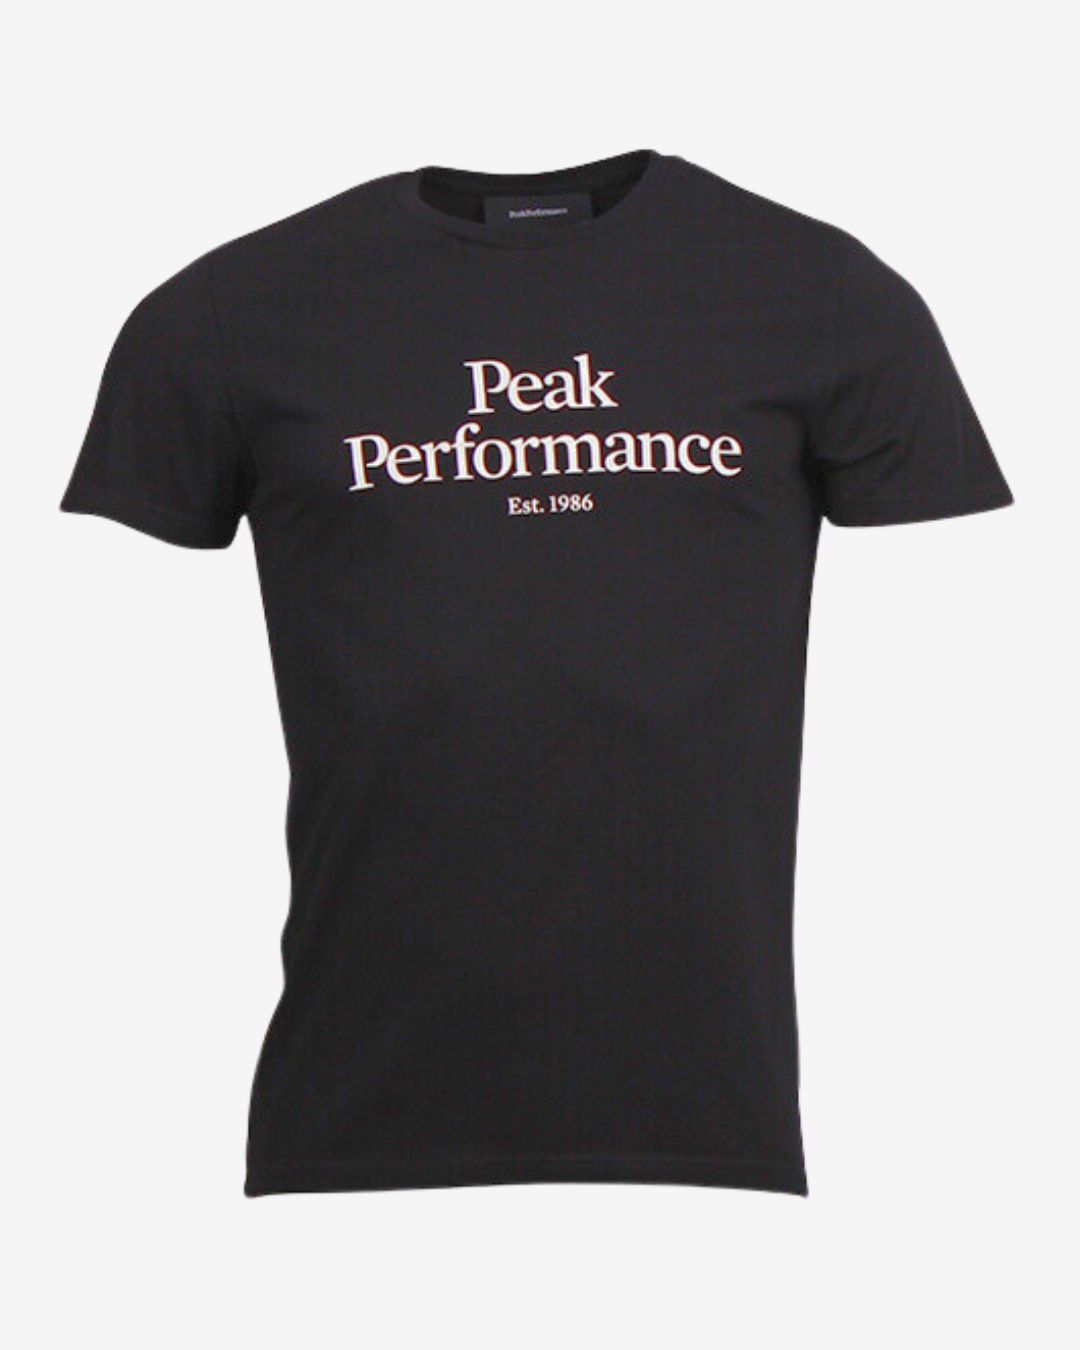 Billede af Peak Performance Original logo t-shirt - Sort - Str. M - Modish.dk